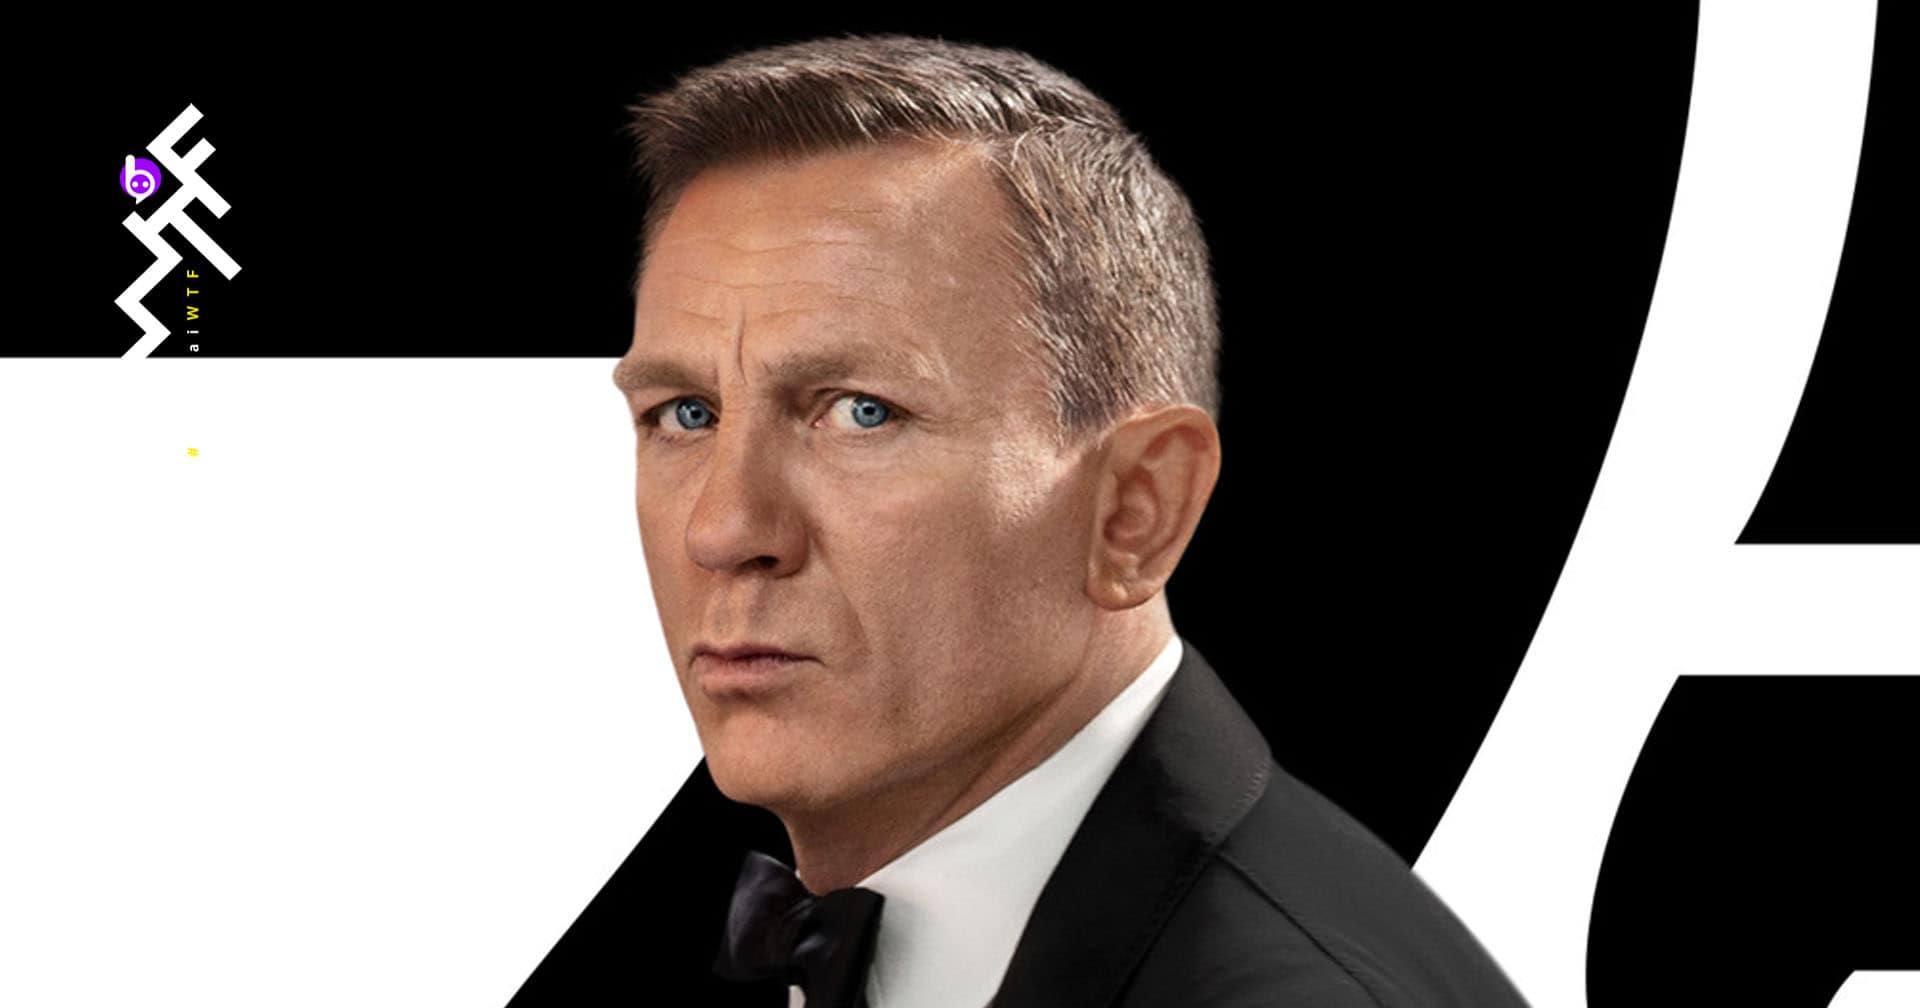 ตัวอย่างใหม่ 007 No Time To Die ออกมาบู๊เข้มข้นและทำให้นึกถึงภาค Skyfall